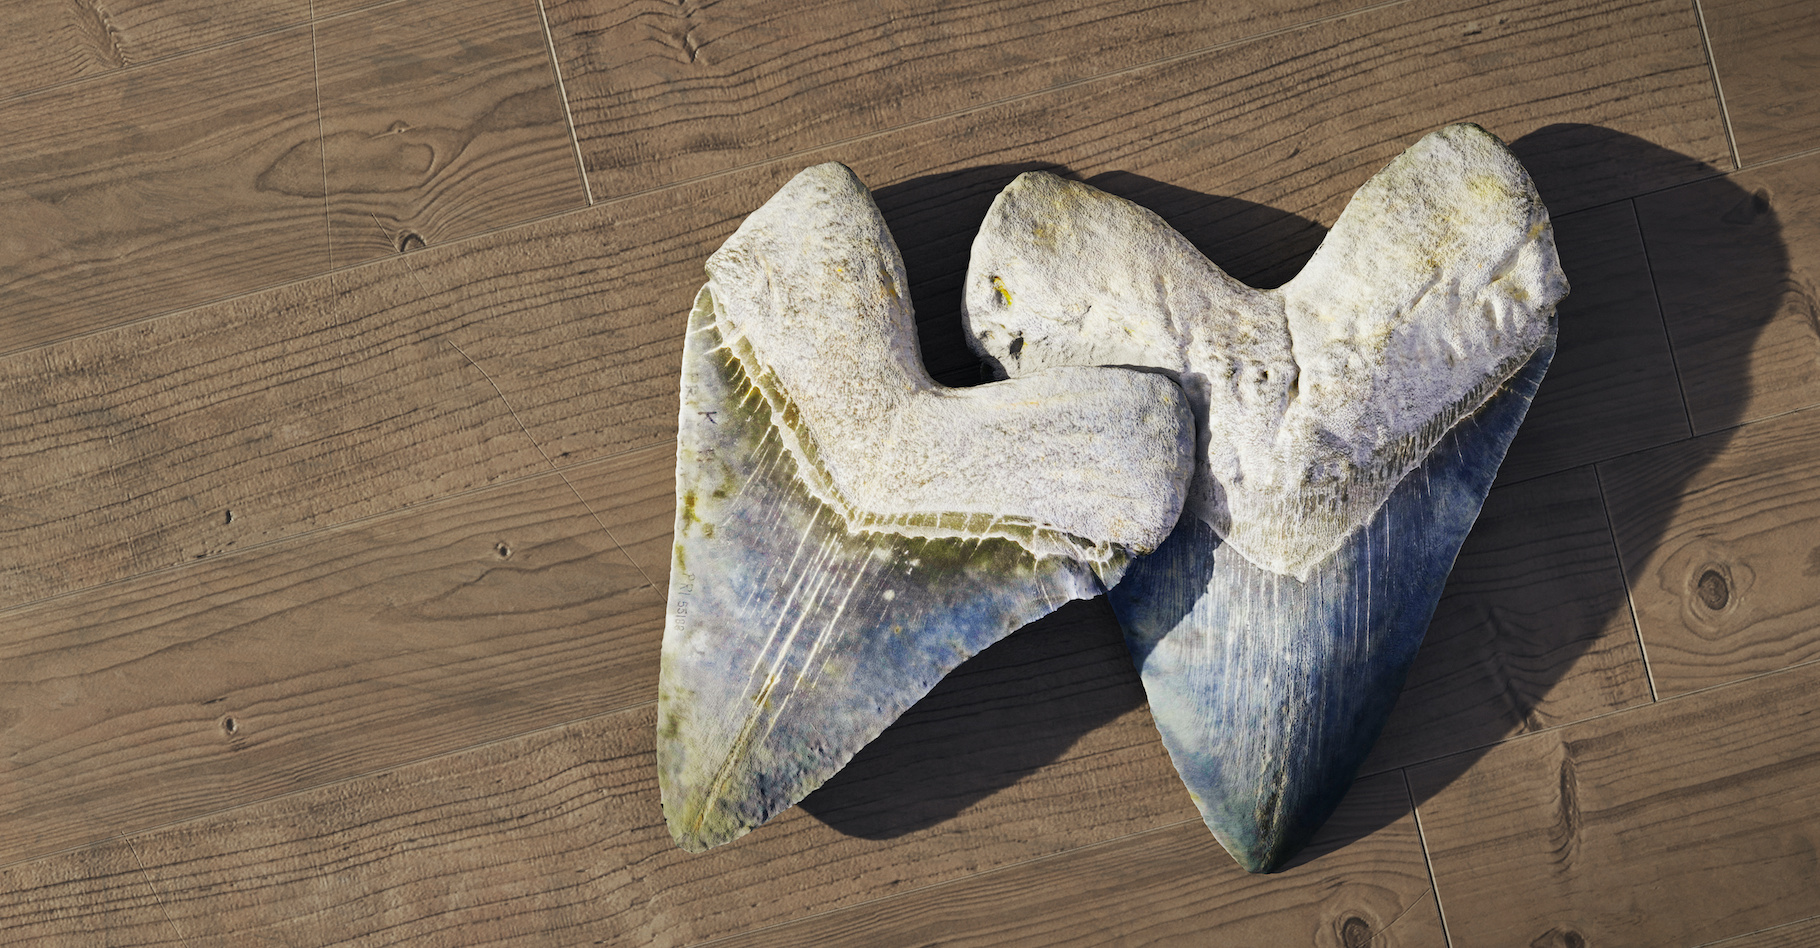 Les mégalodons sont surtout connus par les dents – et les vertèbres –&nbsp;fossiles que les chercheurs ont retrouvées un peu partout dans le monde. Aujourd’hui, ils affirment que la taille de ce requin de la préhistoire variait en fonction de la température de l’eau dans laquelle il évoluait. © dottedyeti, Adobe Stock